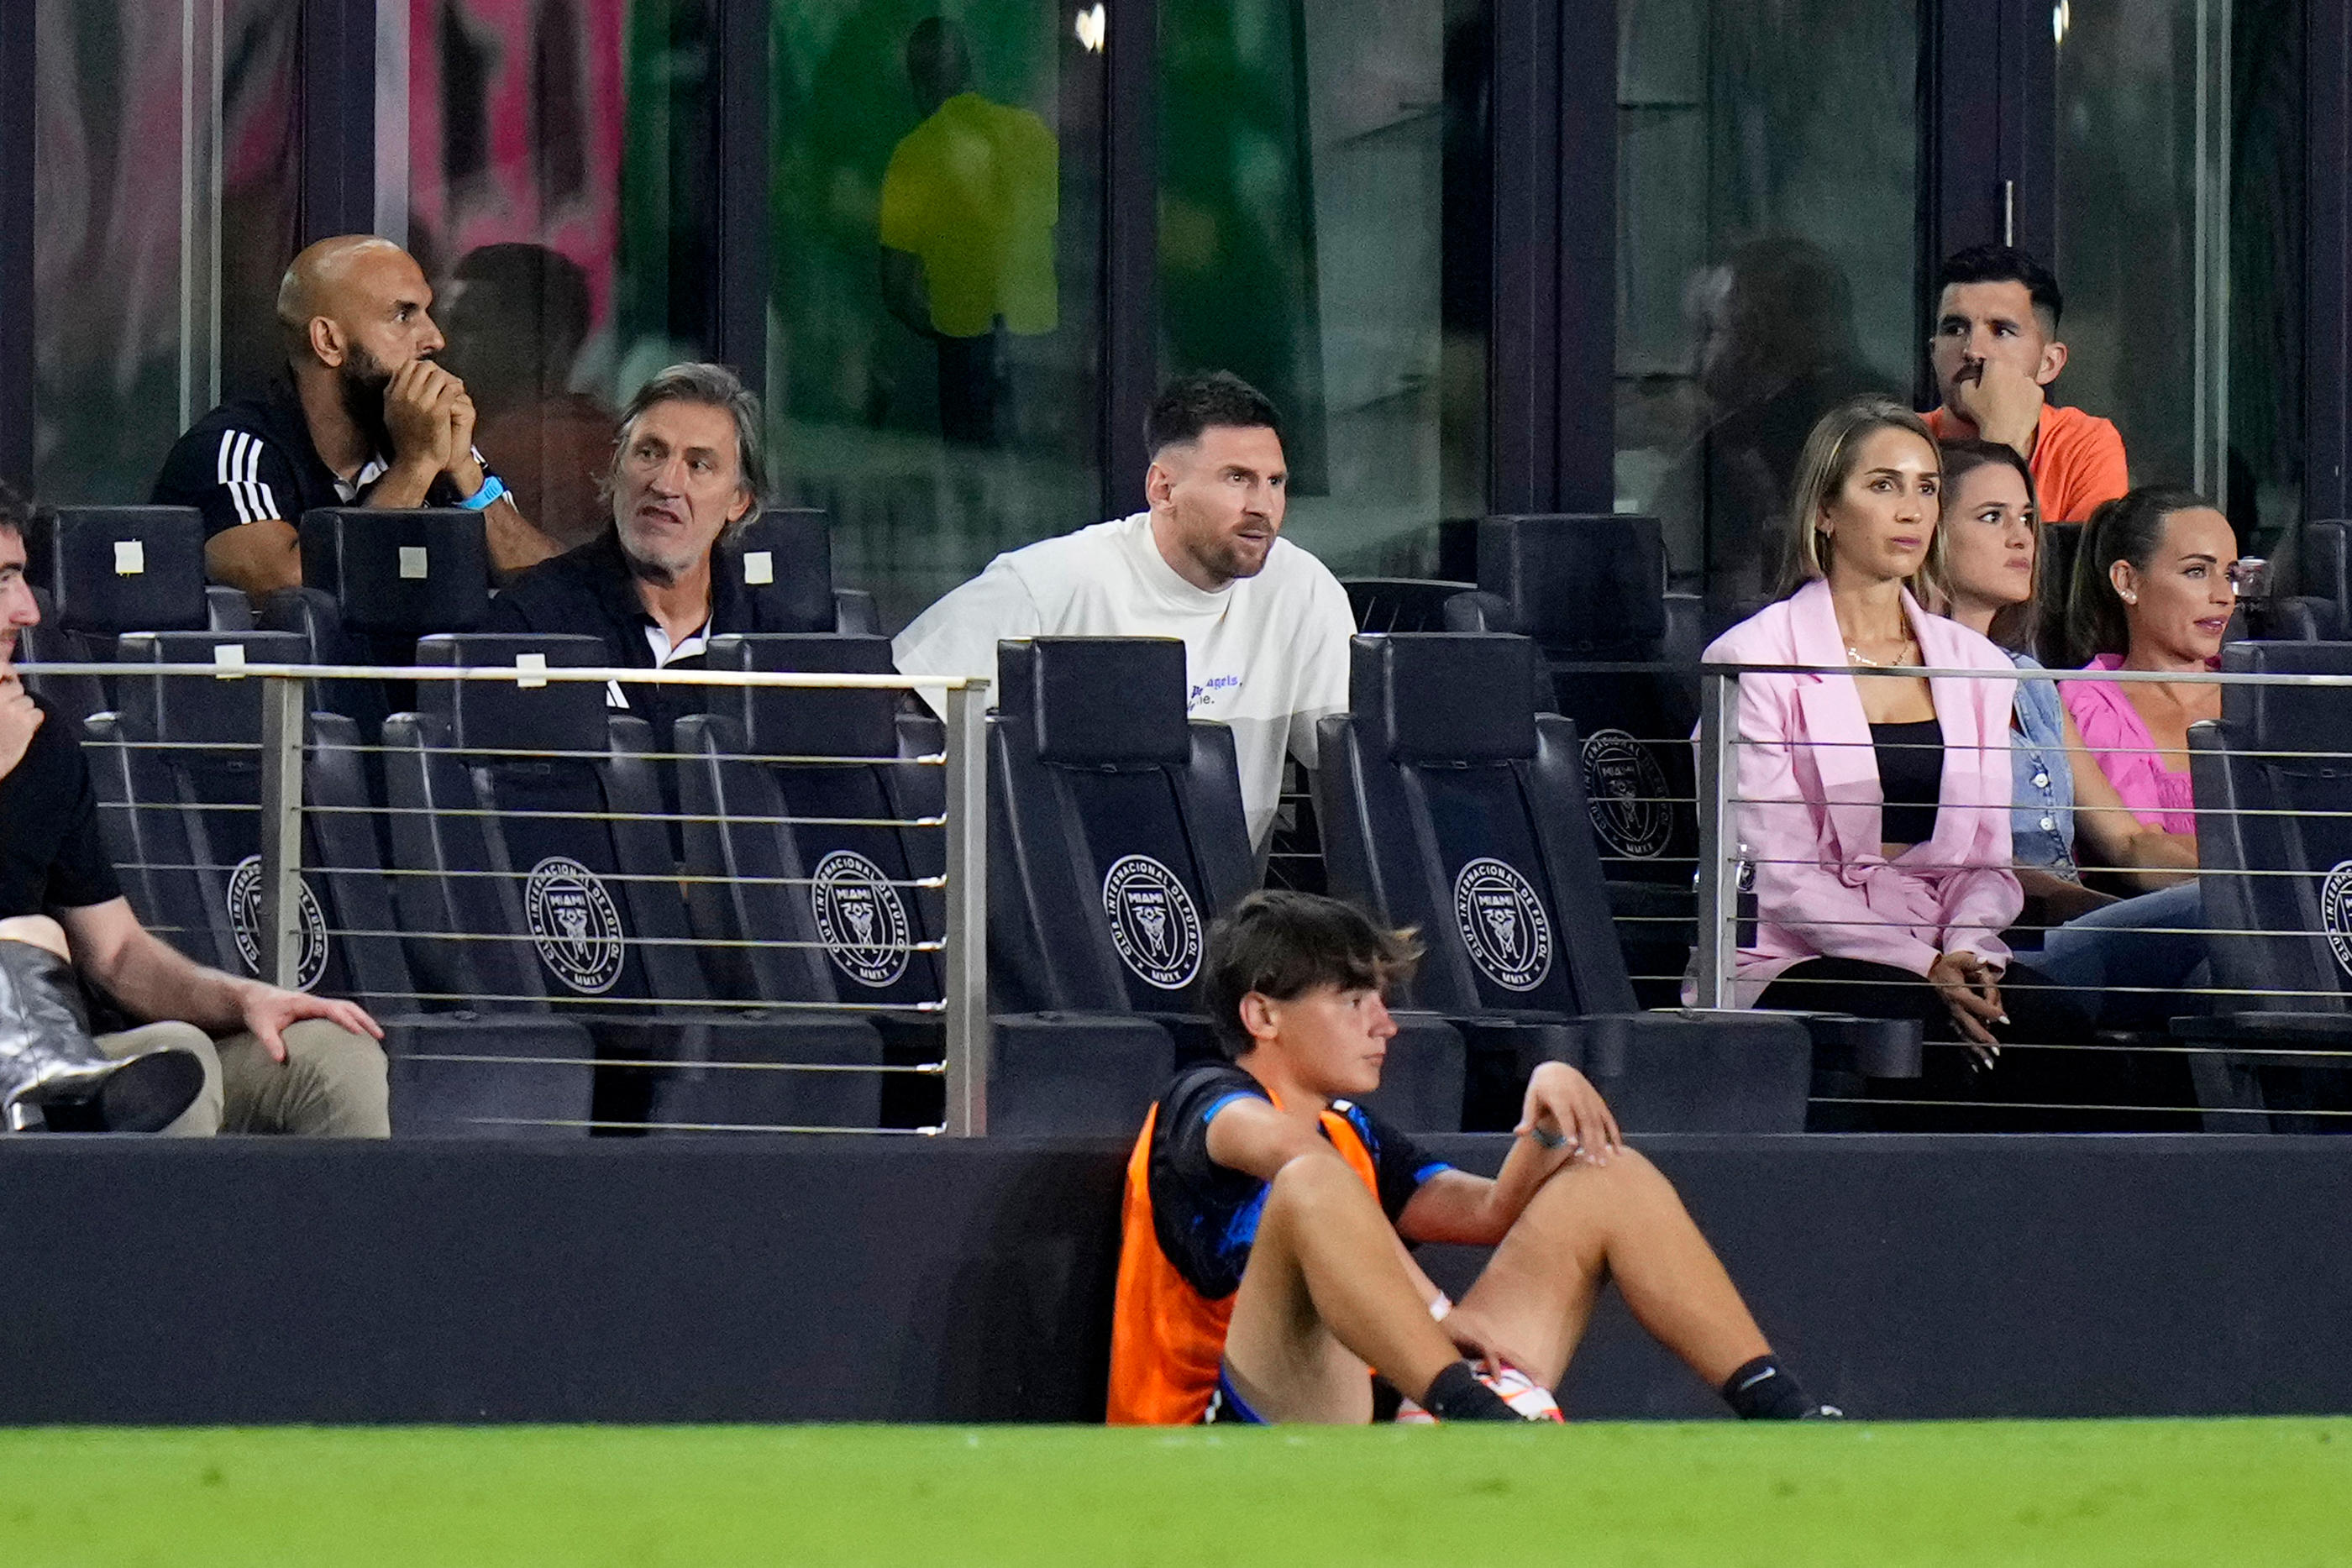 Blessé depuis le 13 mars, Lionel Messi (Inter Miami), en tribune mercredi soir, s'est joint à la colère de plusieurs coéquipiers contre l'arbitre et le staff adverse après la défaite à domicile face à Monterrey. AFP/Rich Storry